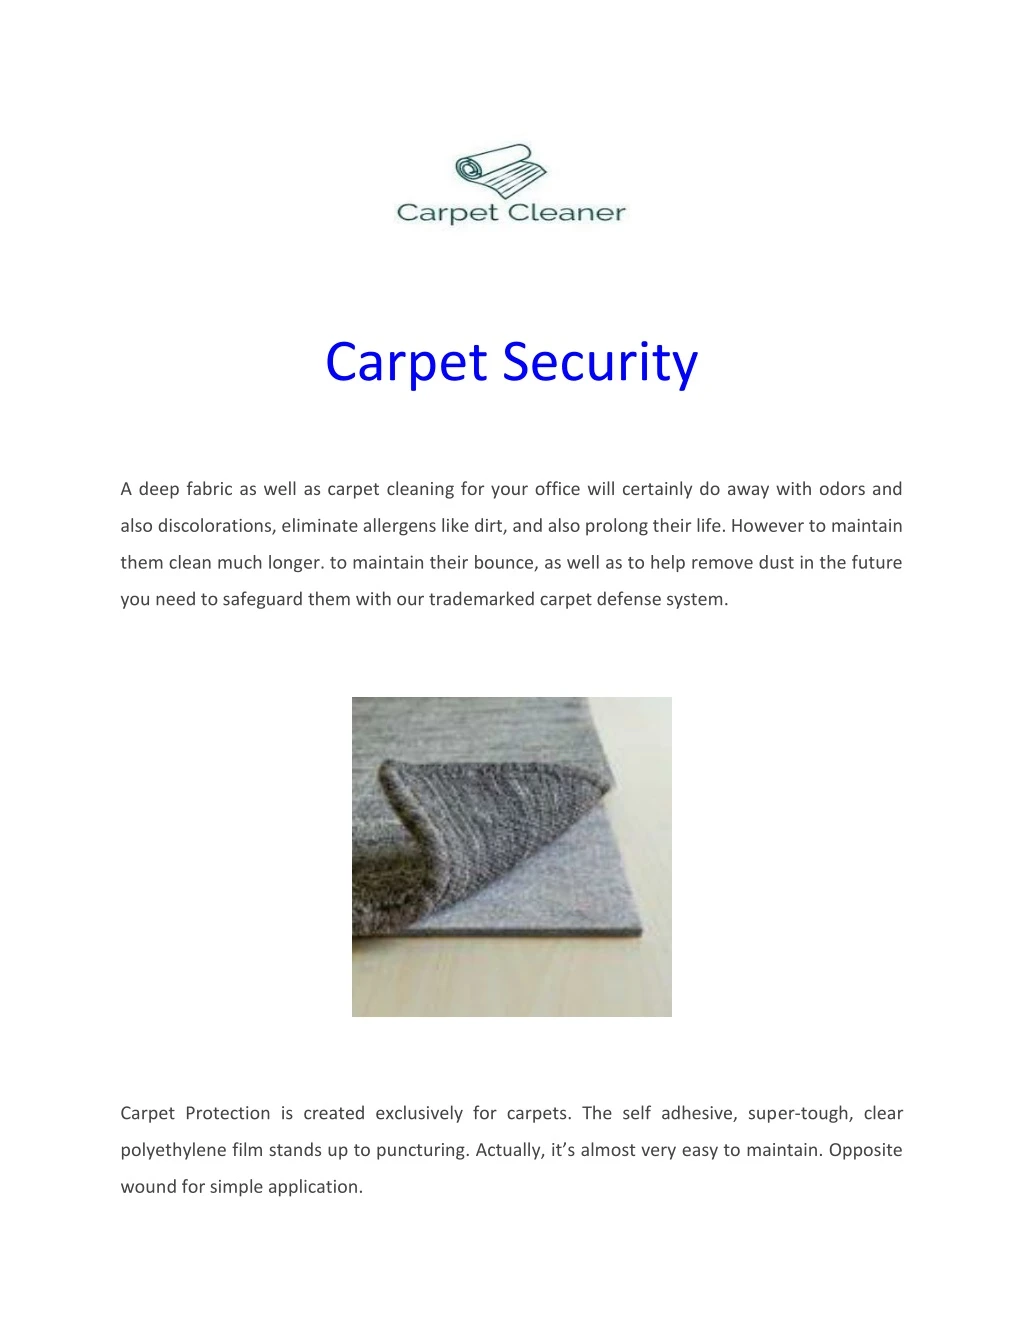 carpet security